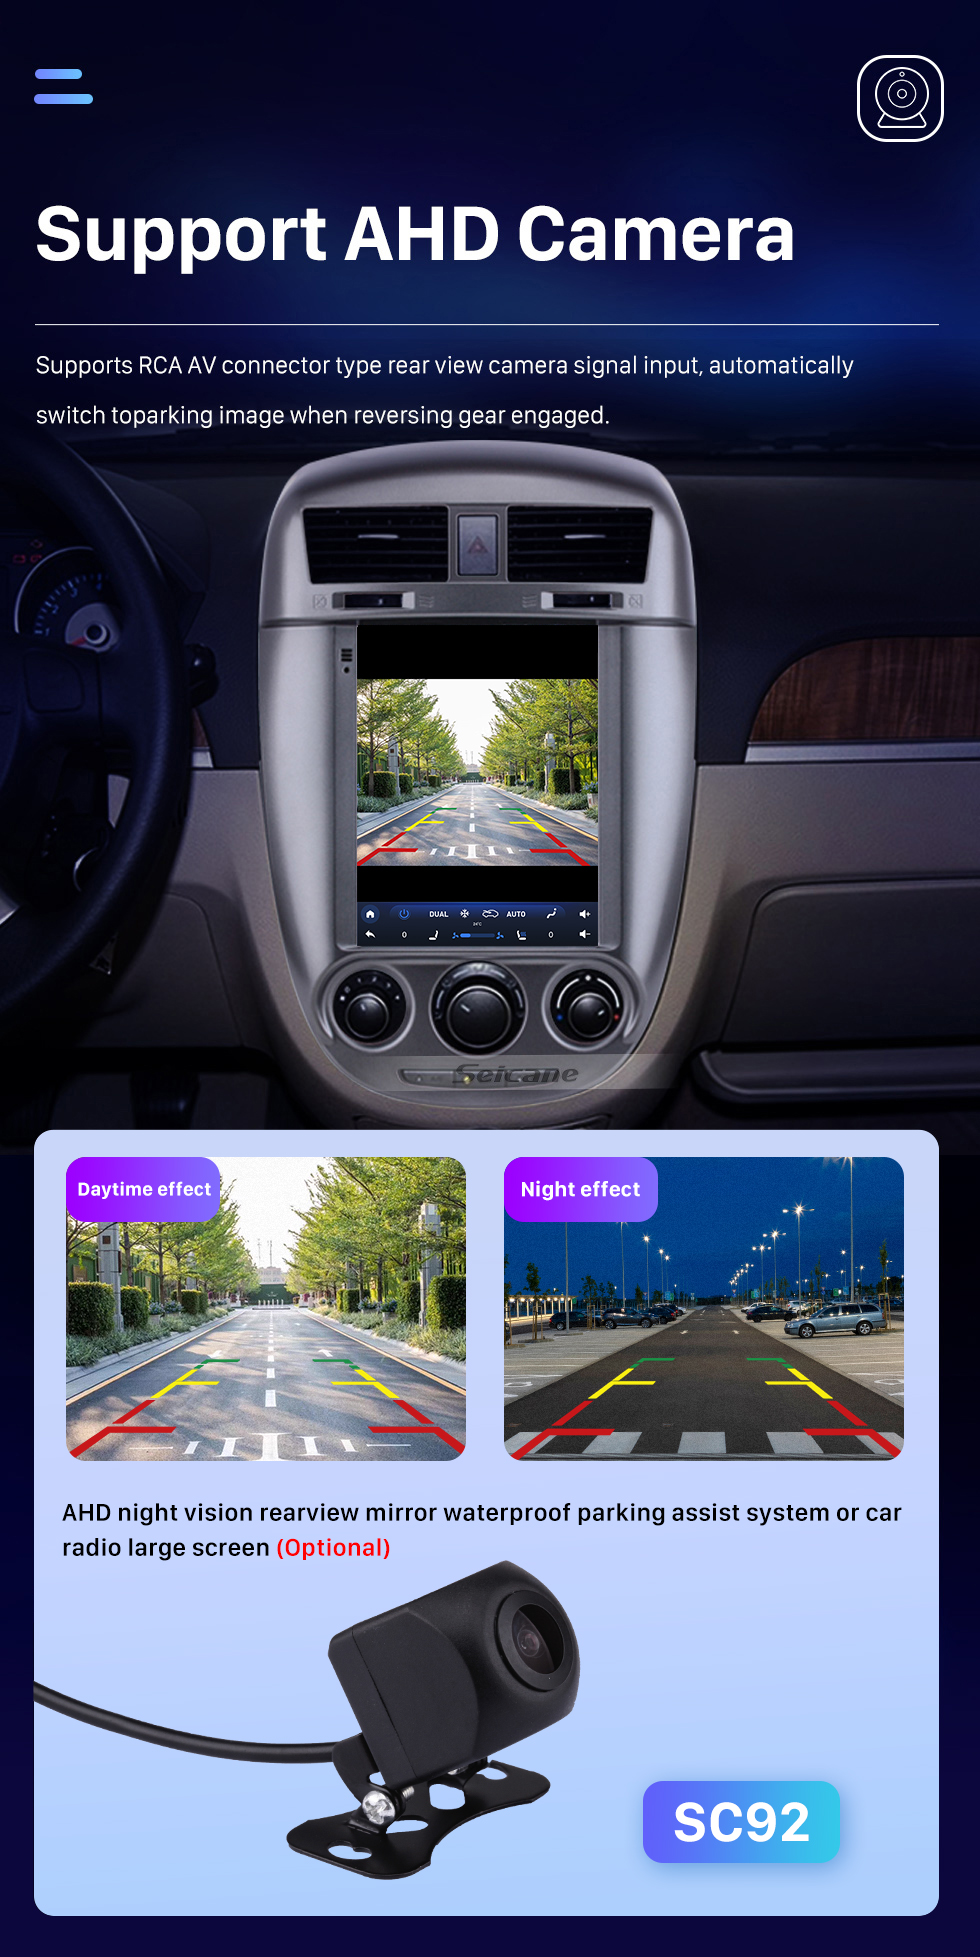 Seicane 9.7 pulgadas Android 10.0 para 2016 Buick New Excelle Radio Navegación GPS con pantalla táctil HD Soporte Bluetooth Carplay TPMS